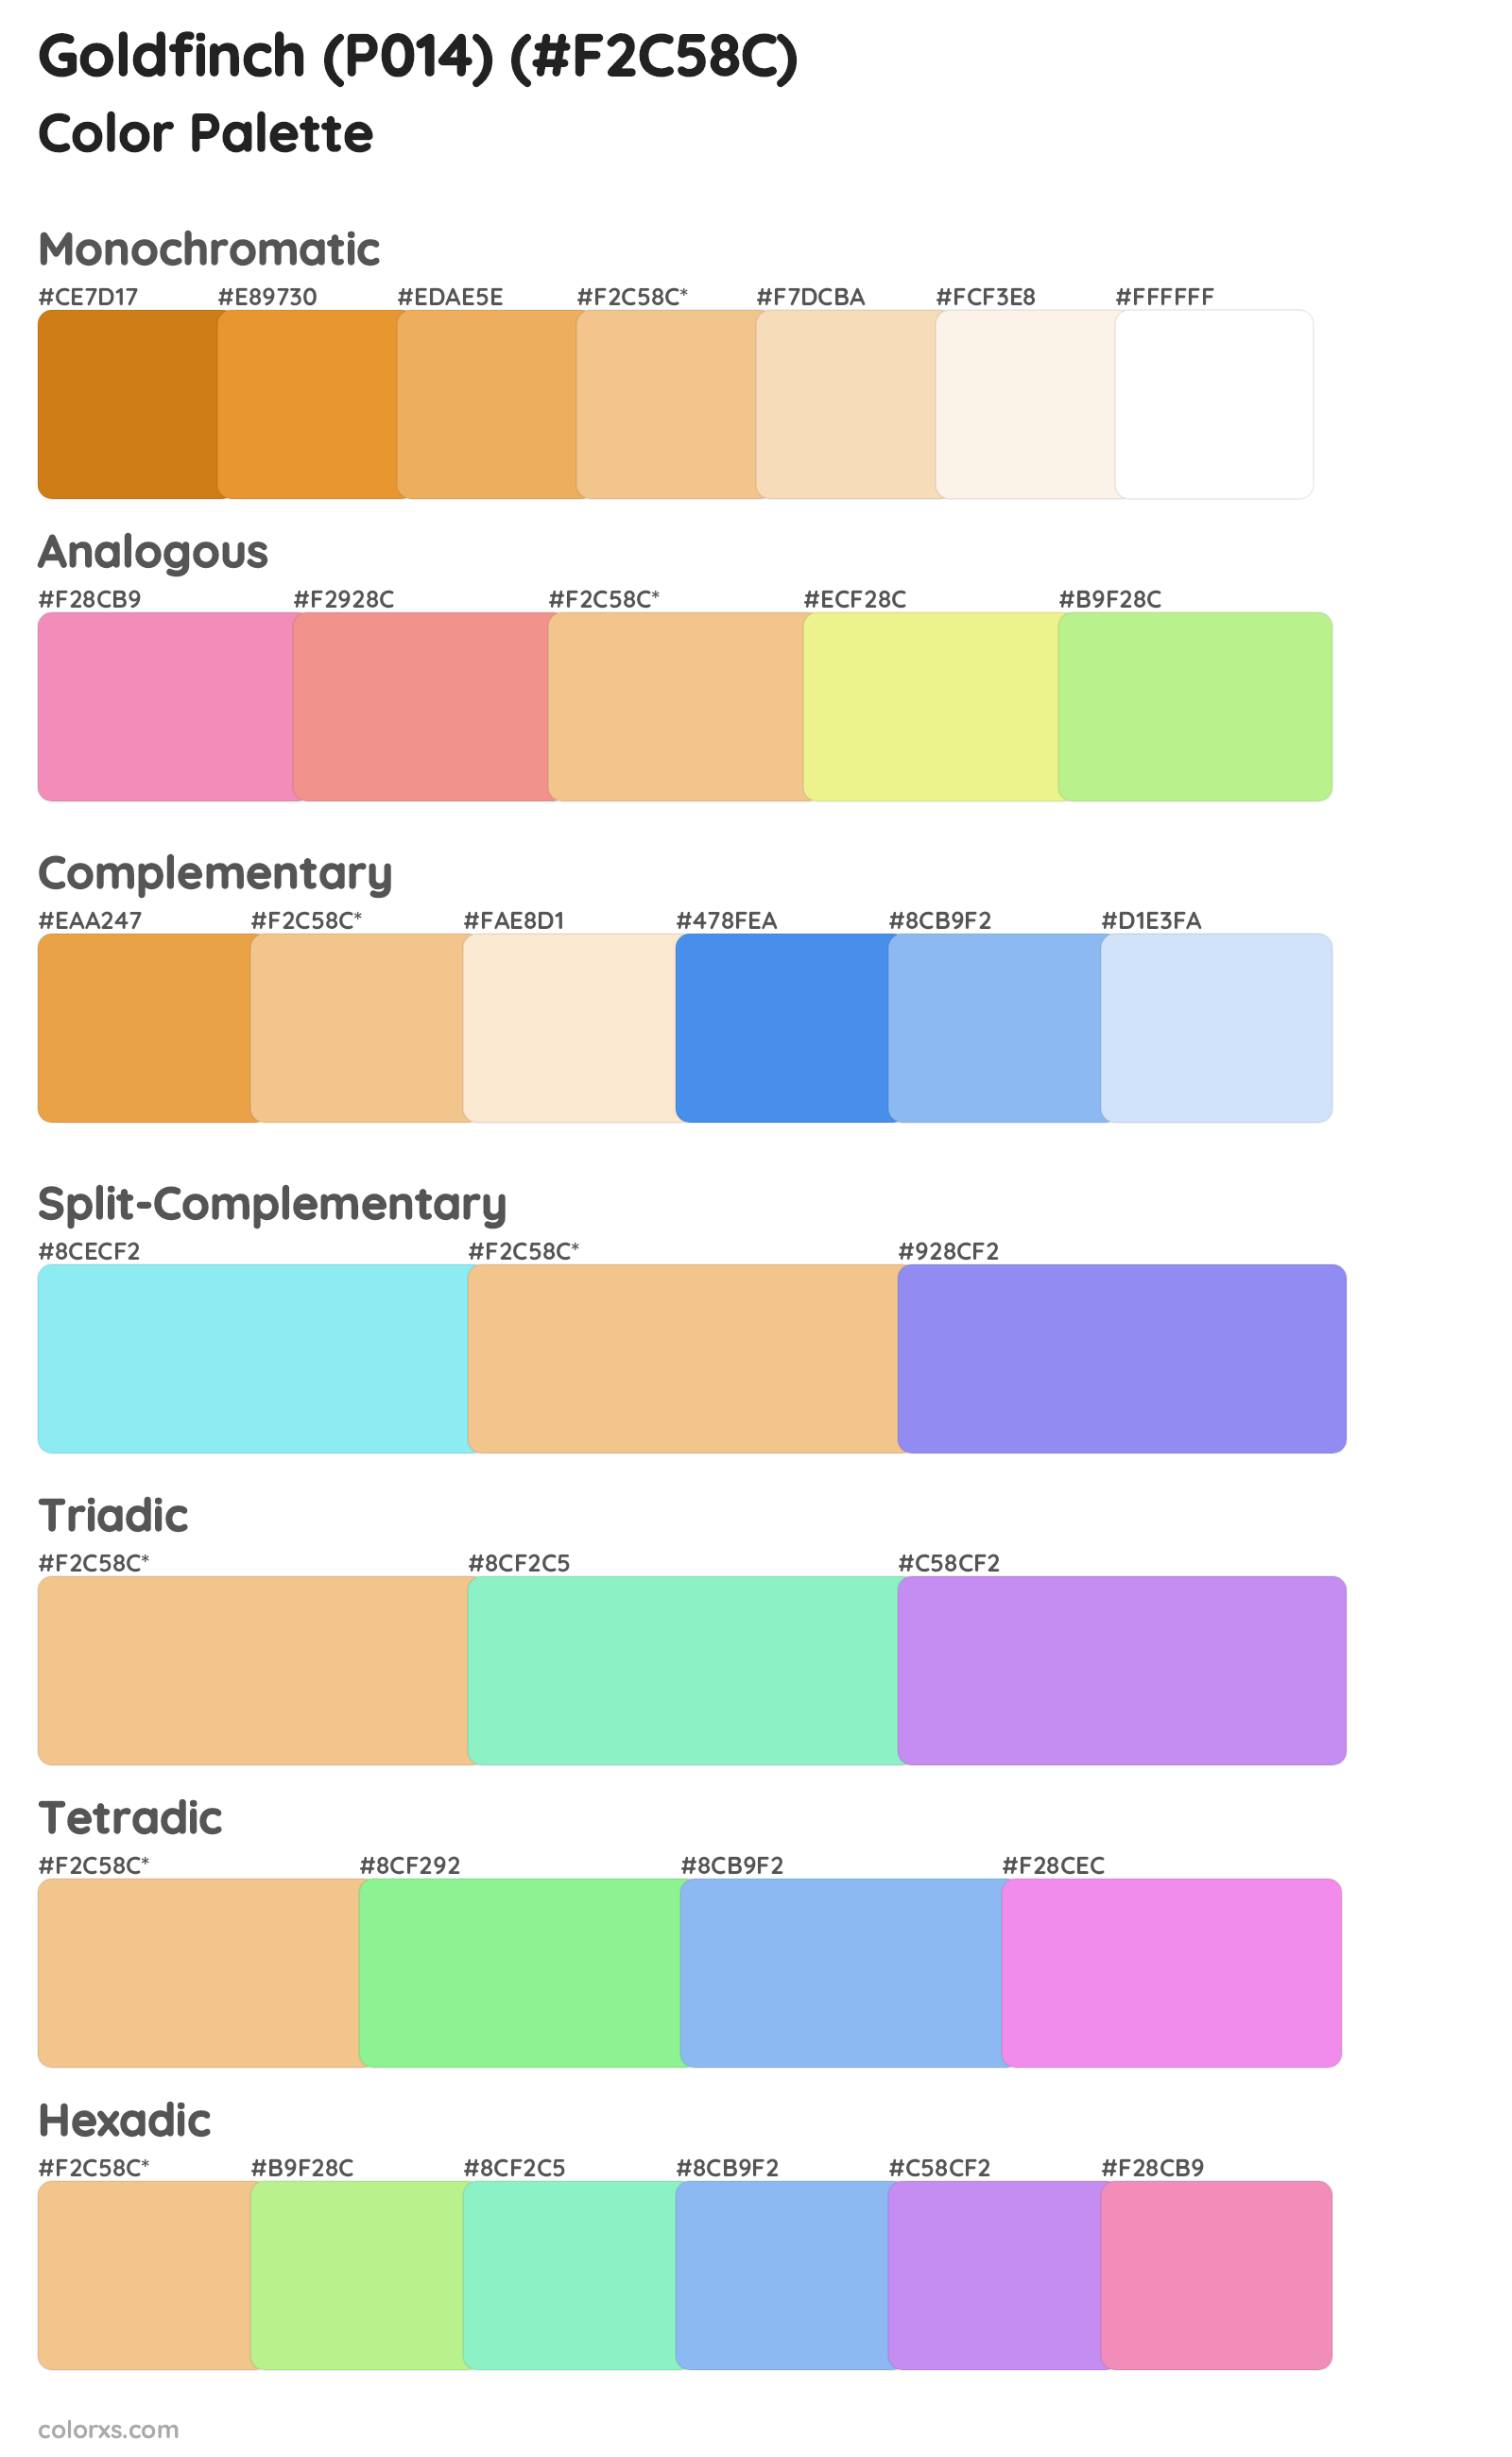 Goldfinch (P014) Color Scheme Palettes